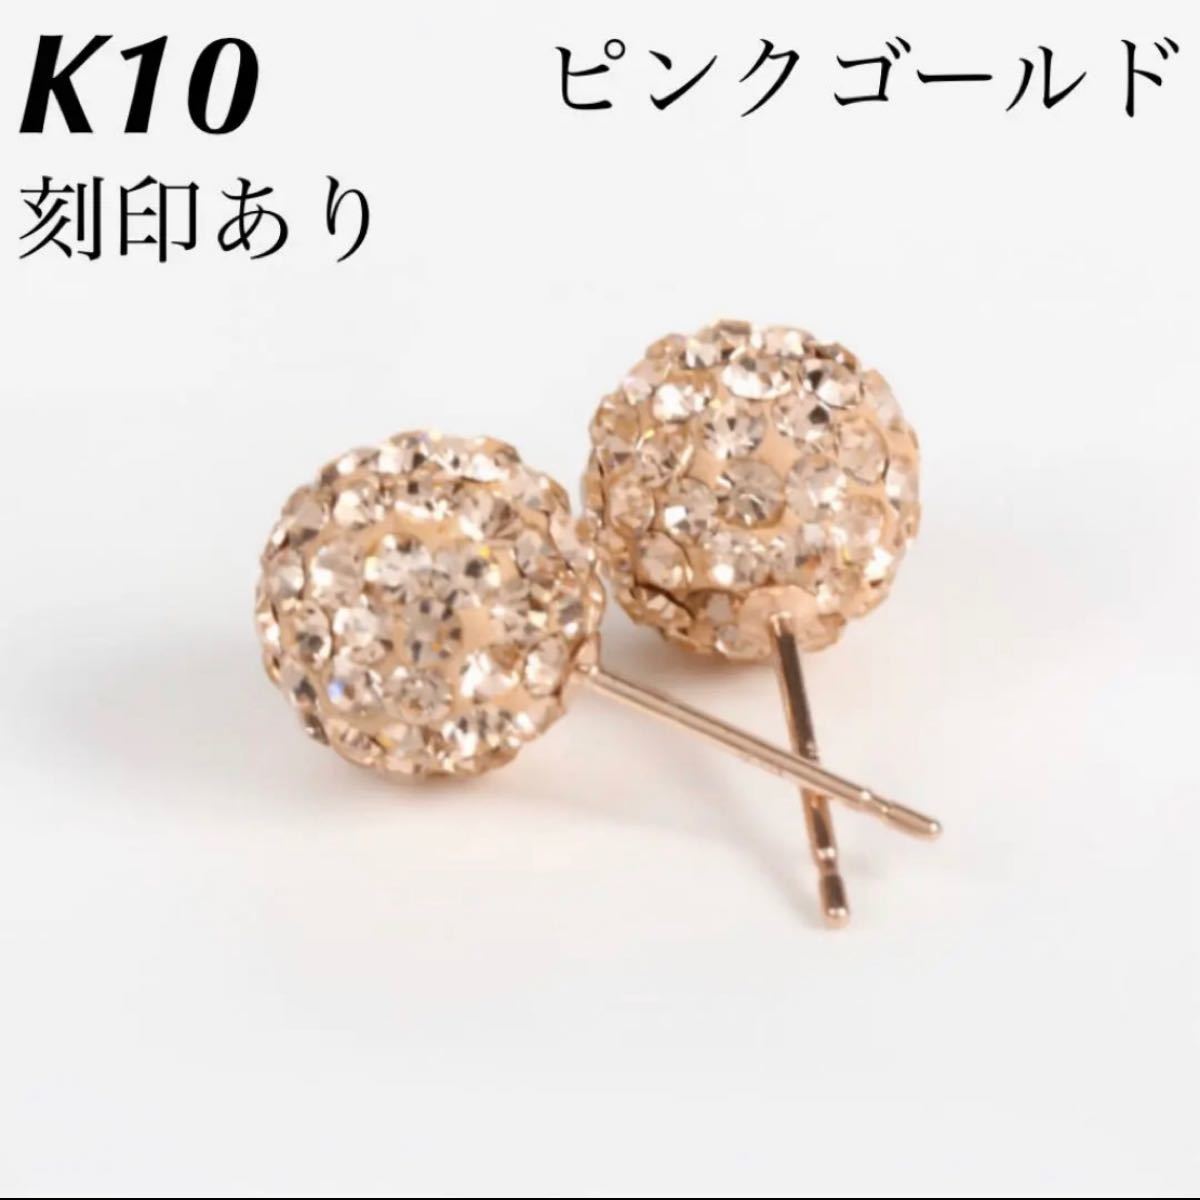 新品 K10 ピンクゴールド 10金ピアス 刻印あり 上質 日本製 ペア ♡⑯